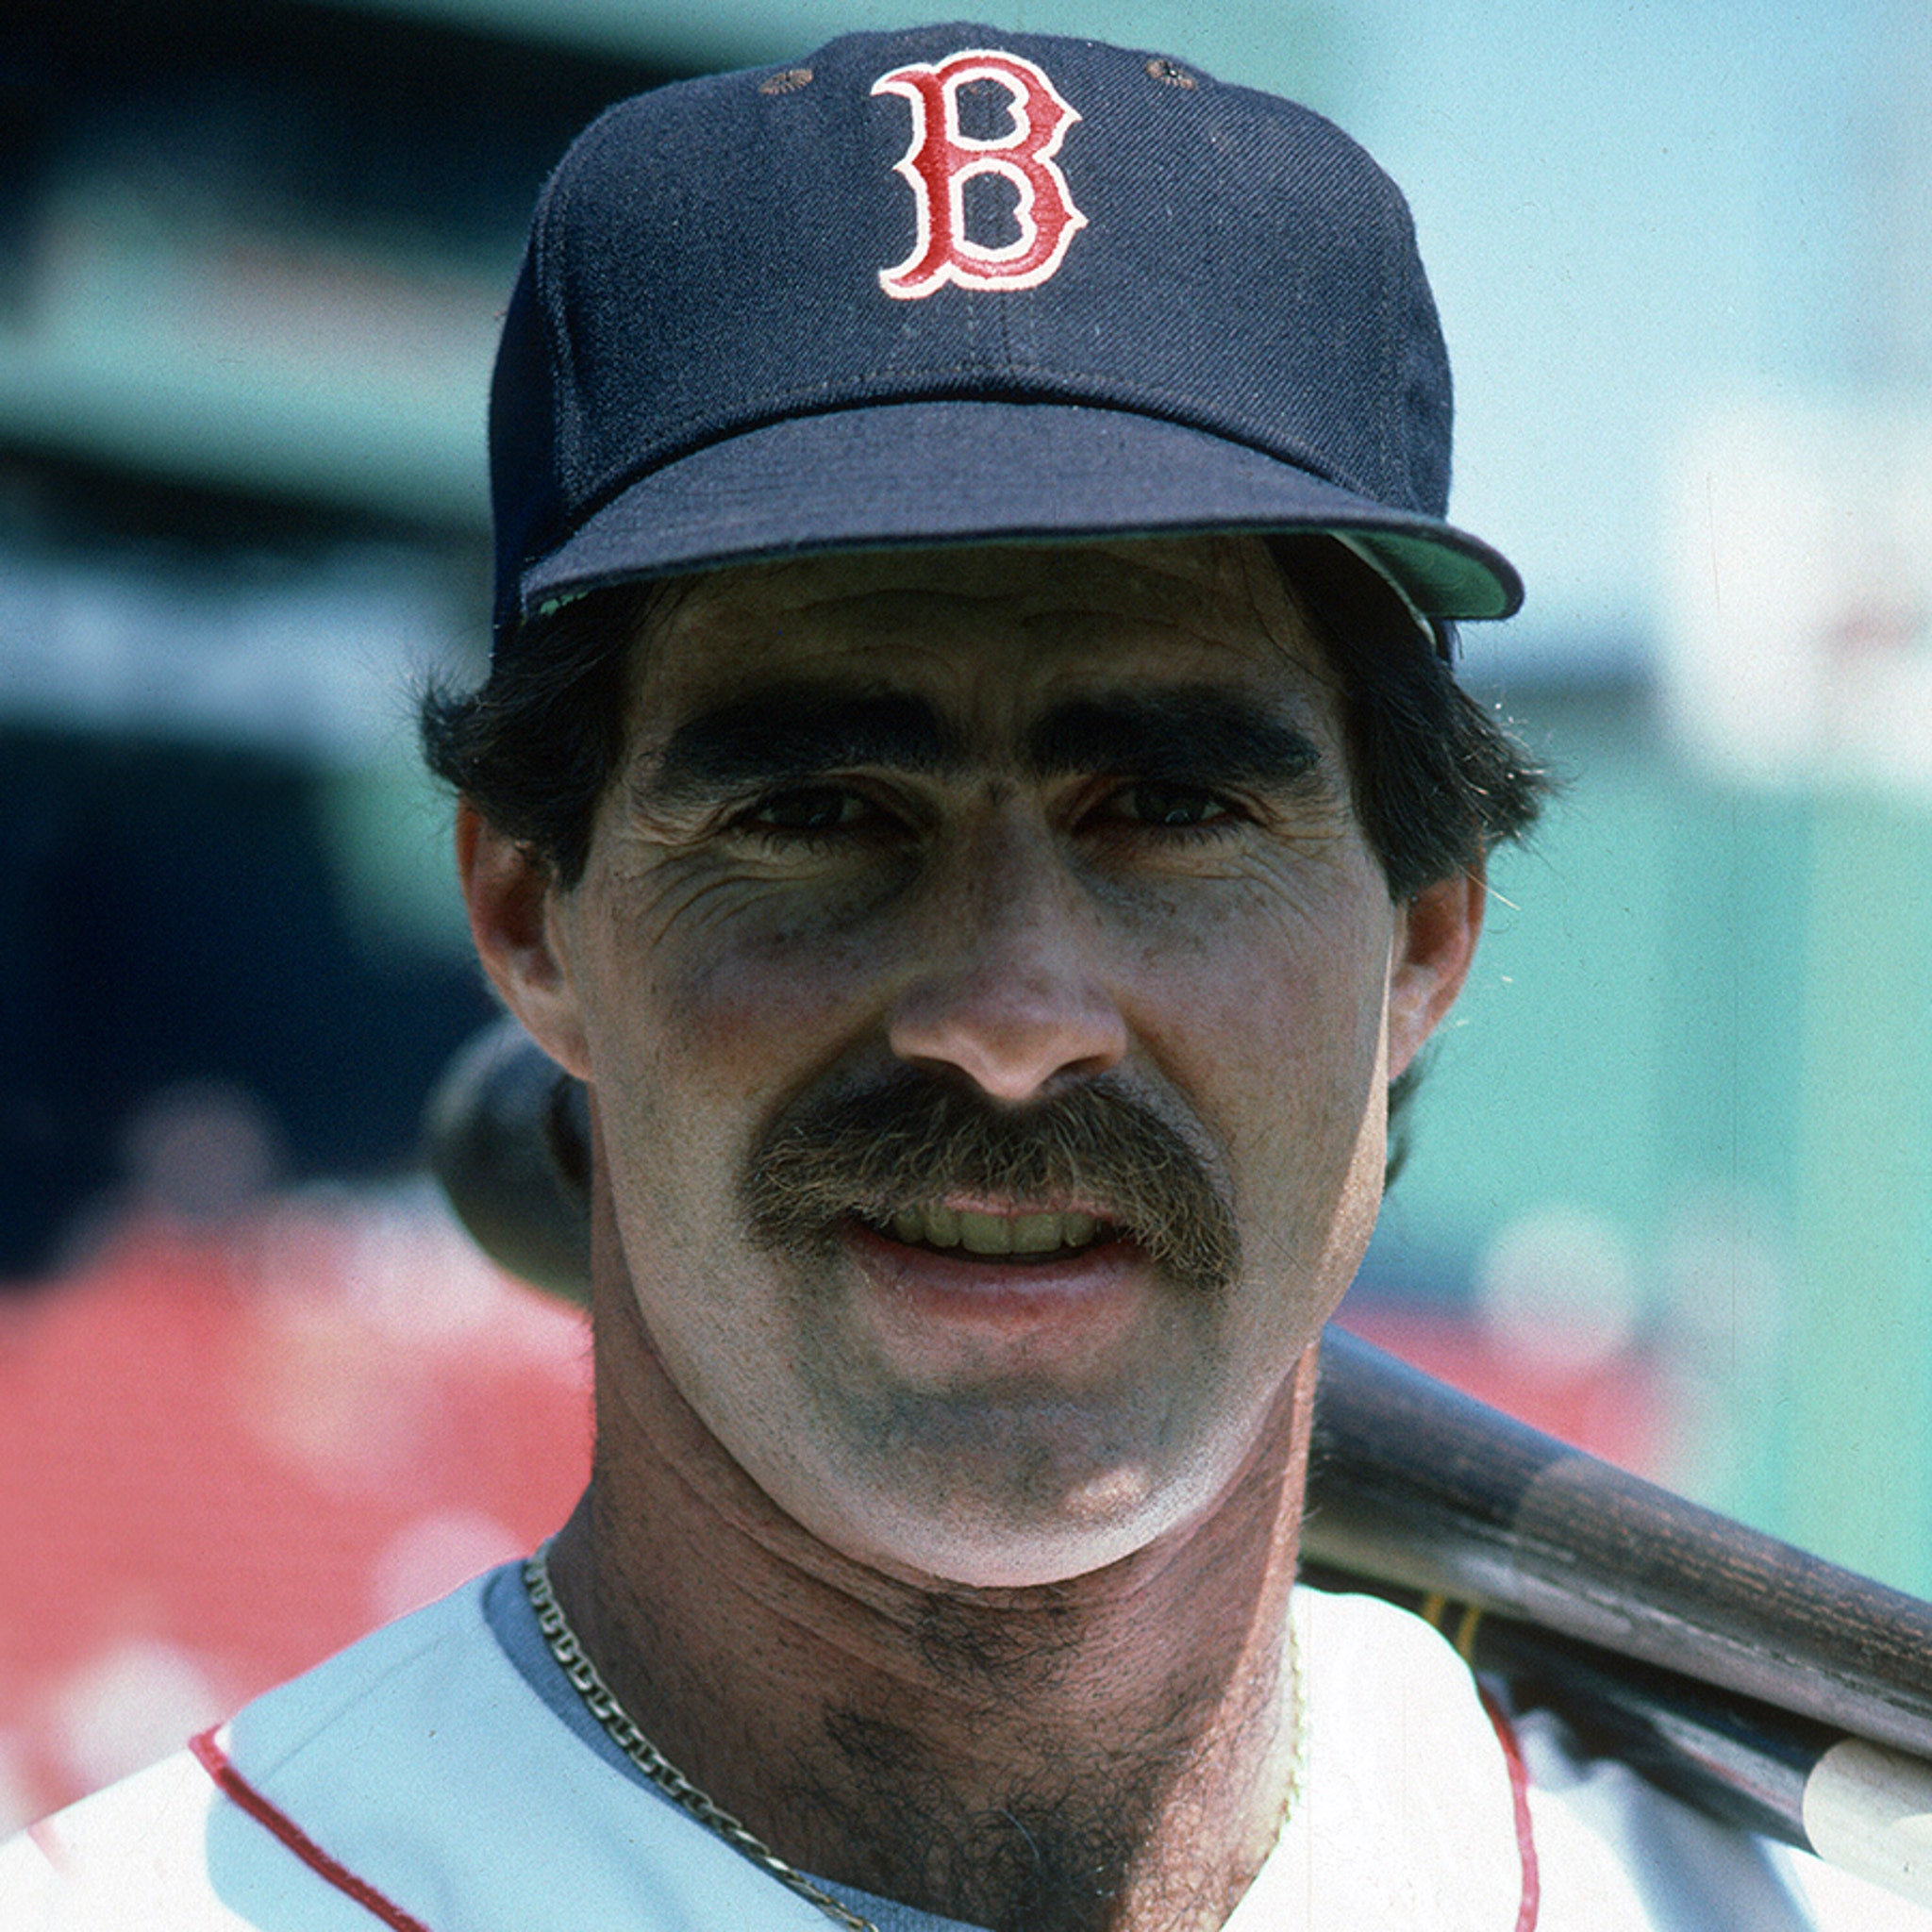 Red Sox Player Bill Buckner Dead at 69